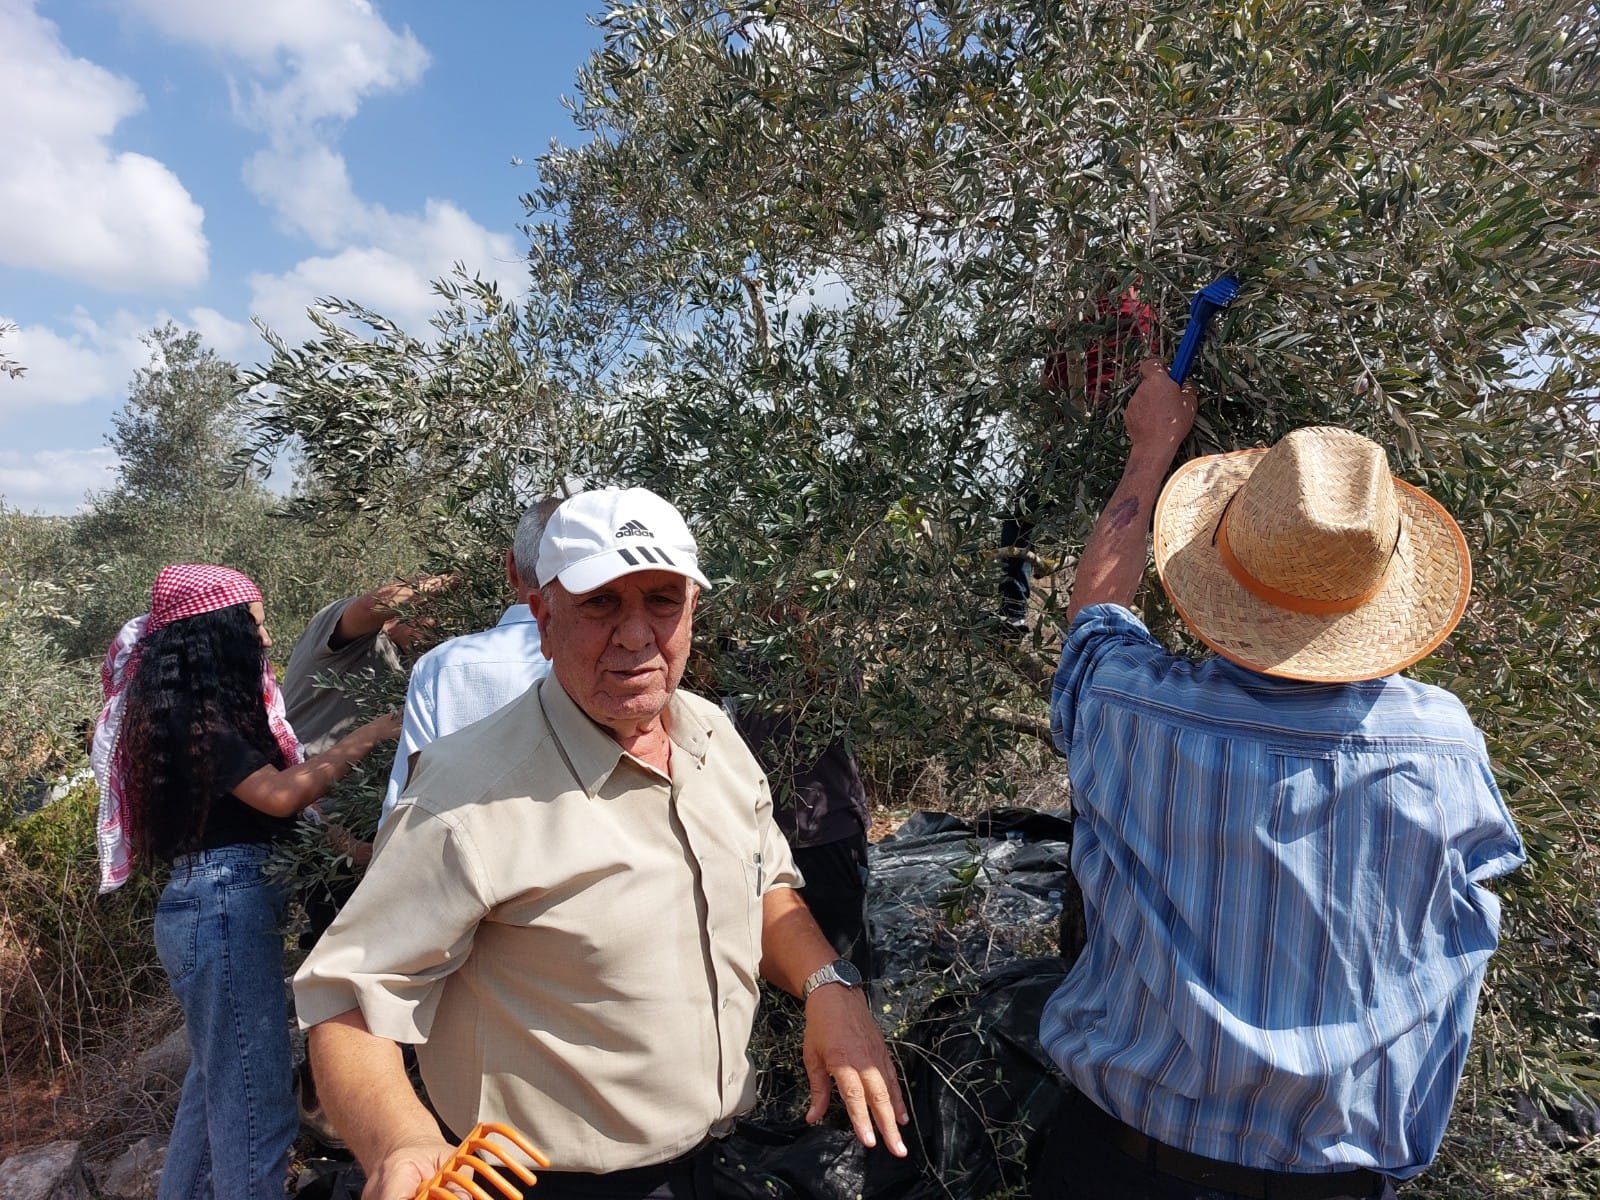 "حُرية" تنضم إلى حملة "لستم وحدكم" لمساندة صمود المزارعين الفلسطينيين في قطف الزيتون-2